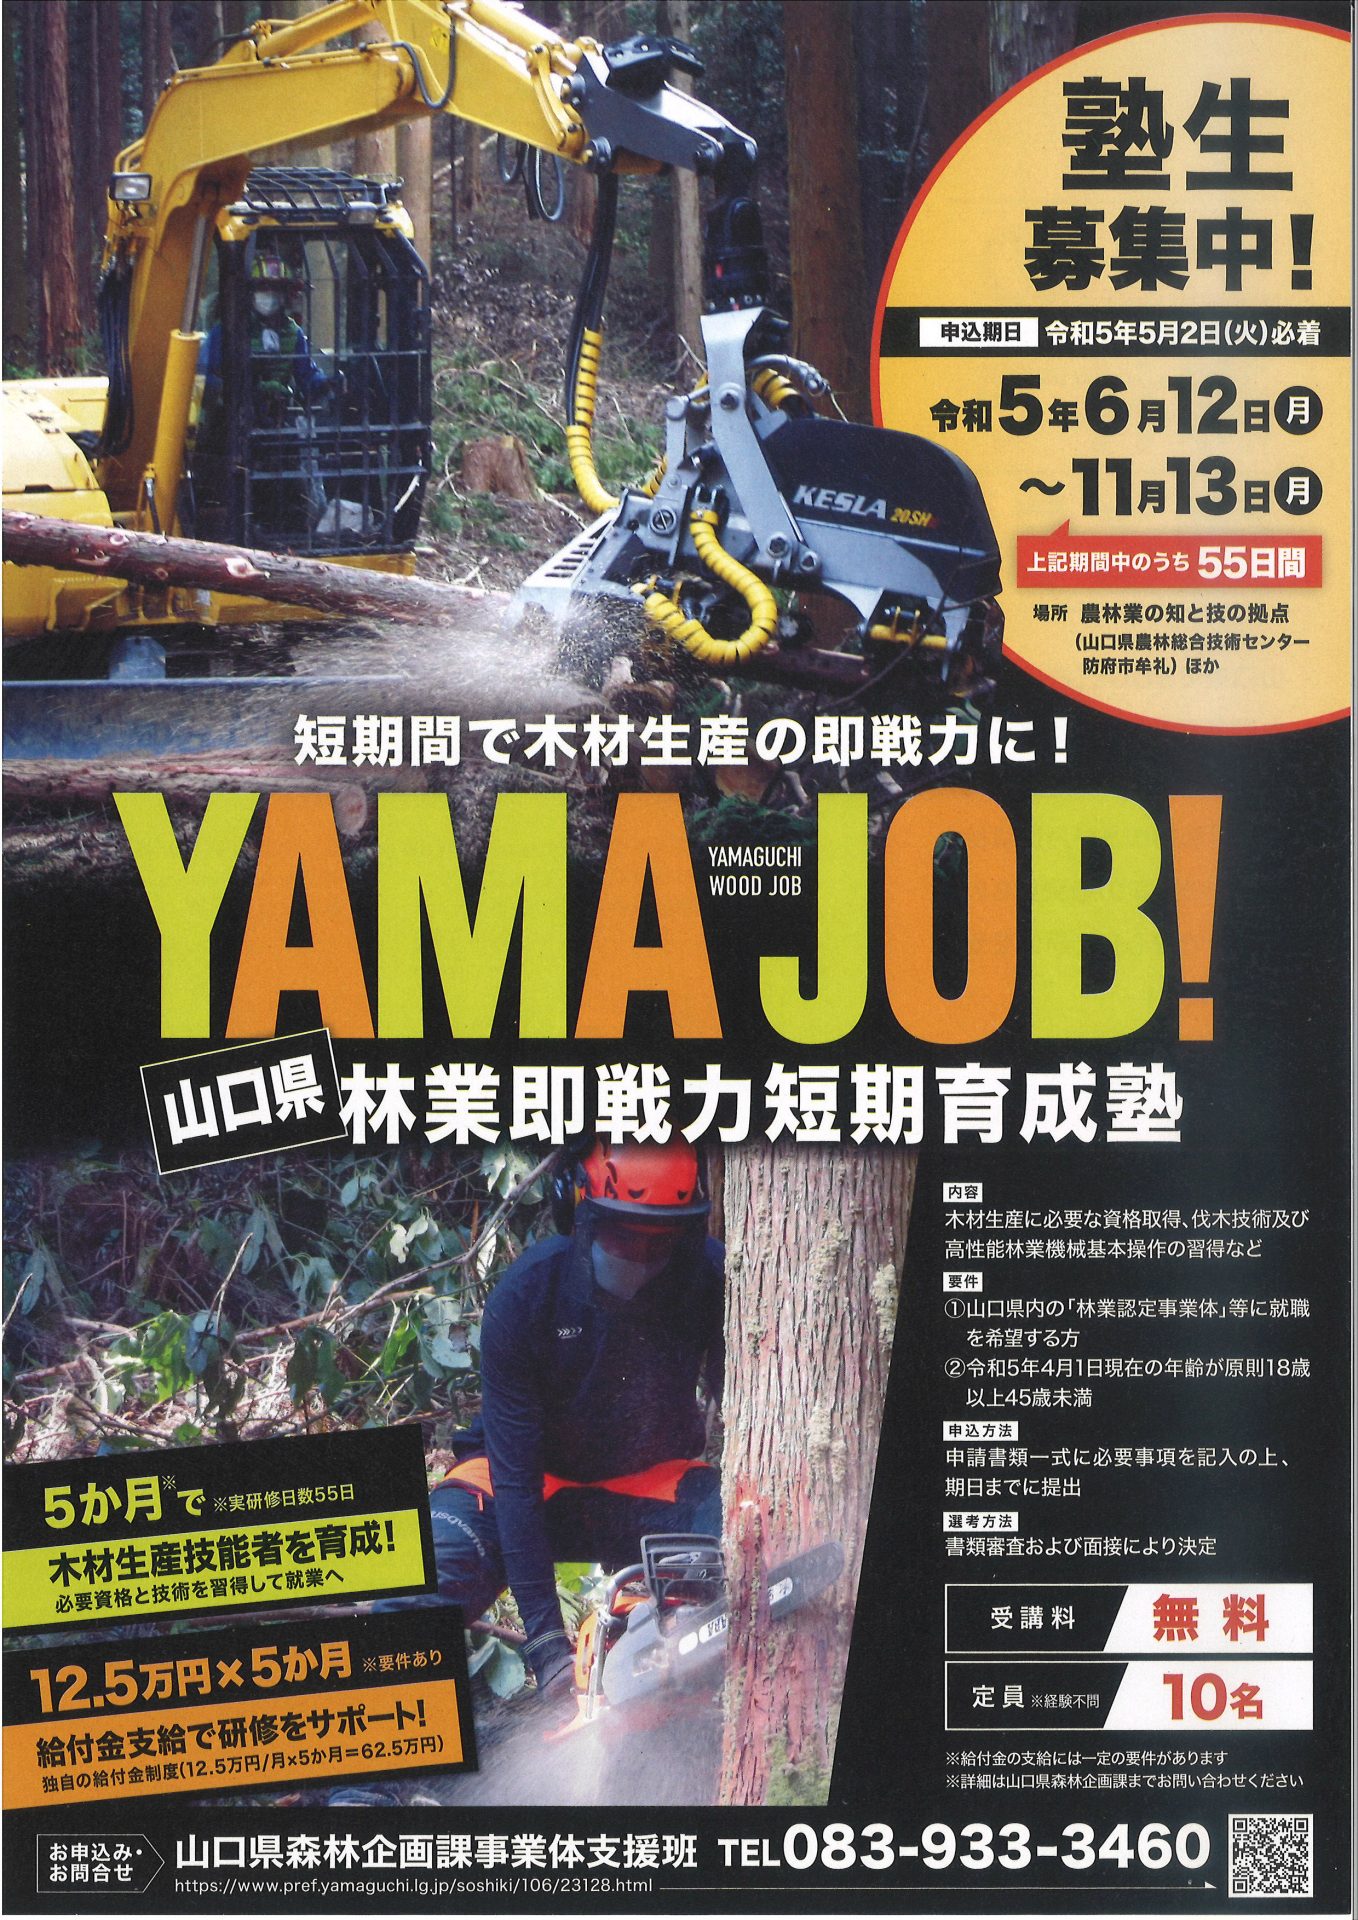 【林業に関心のある方募集】「YAMAJOB！」山口県即戦力短期育成塾・塾生募集中 | 地域のトピックス